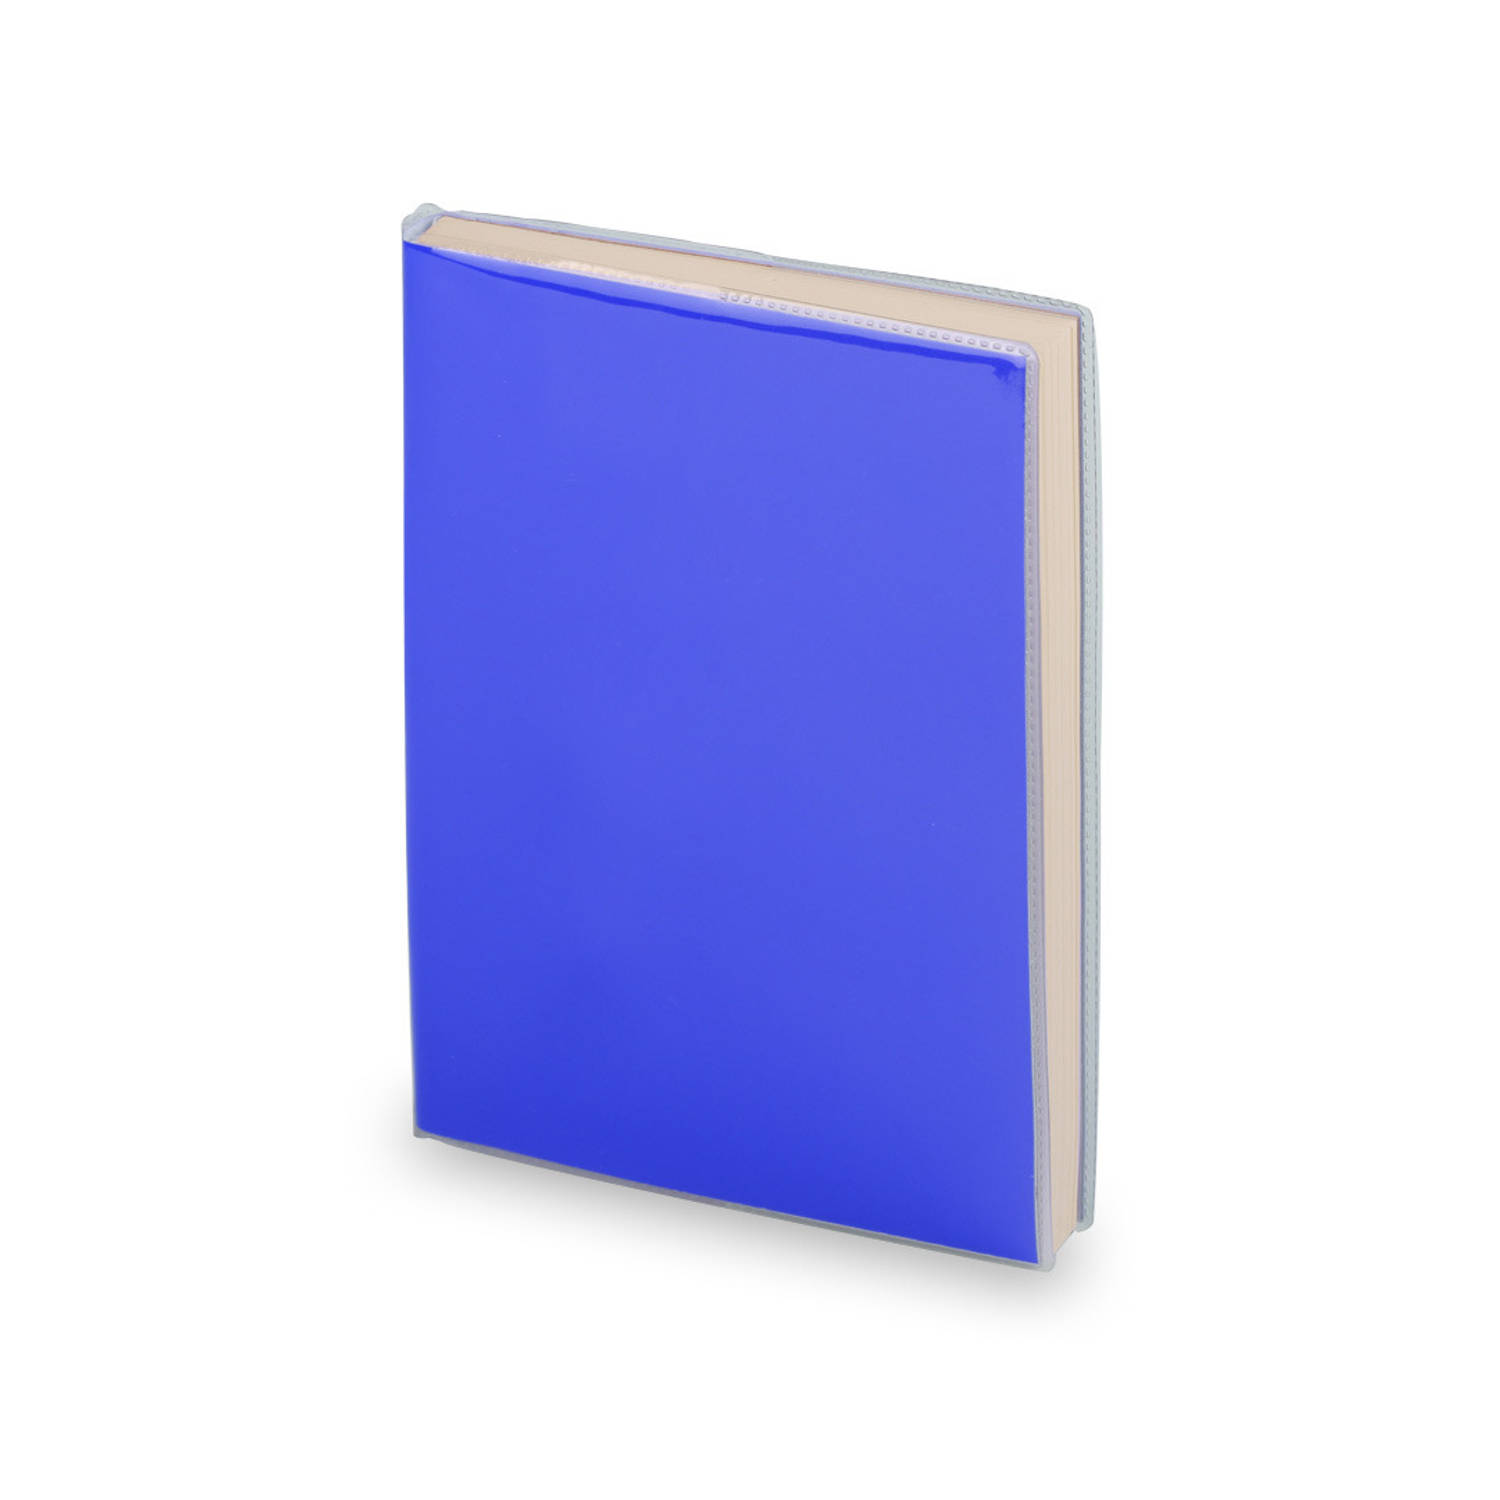 Notitieblokje zachte kaft blauw 10 x 13 cm Notitieboek